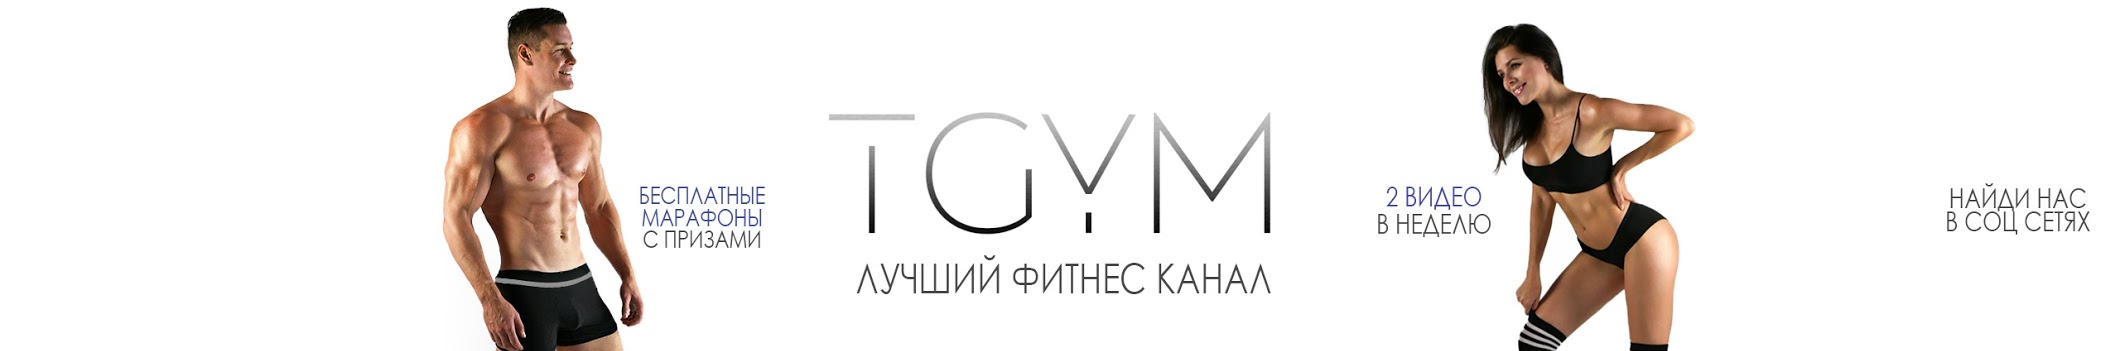 TGYM - лучший фитнес канал